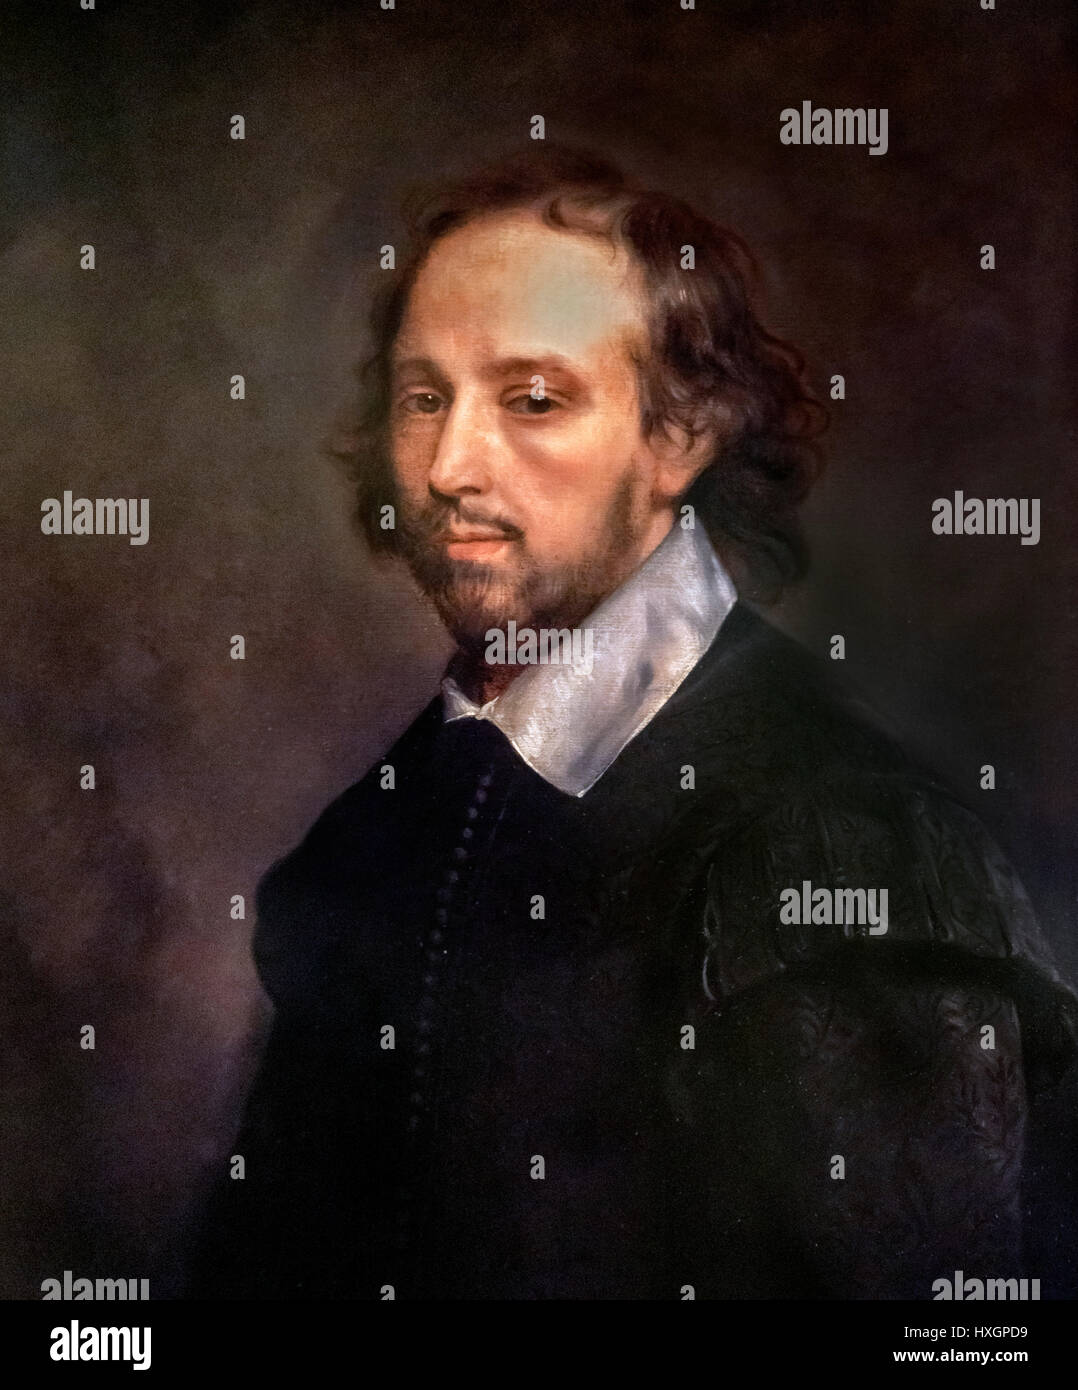 Portrait de William Shakespeare par Gerard Soest. Reproduction d'une c.1667 peinture qui a été faite après la mort de Shakespeare et est probablement basé sur le plus connu 'portrait' Chandos. Banque D'Images